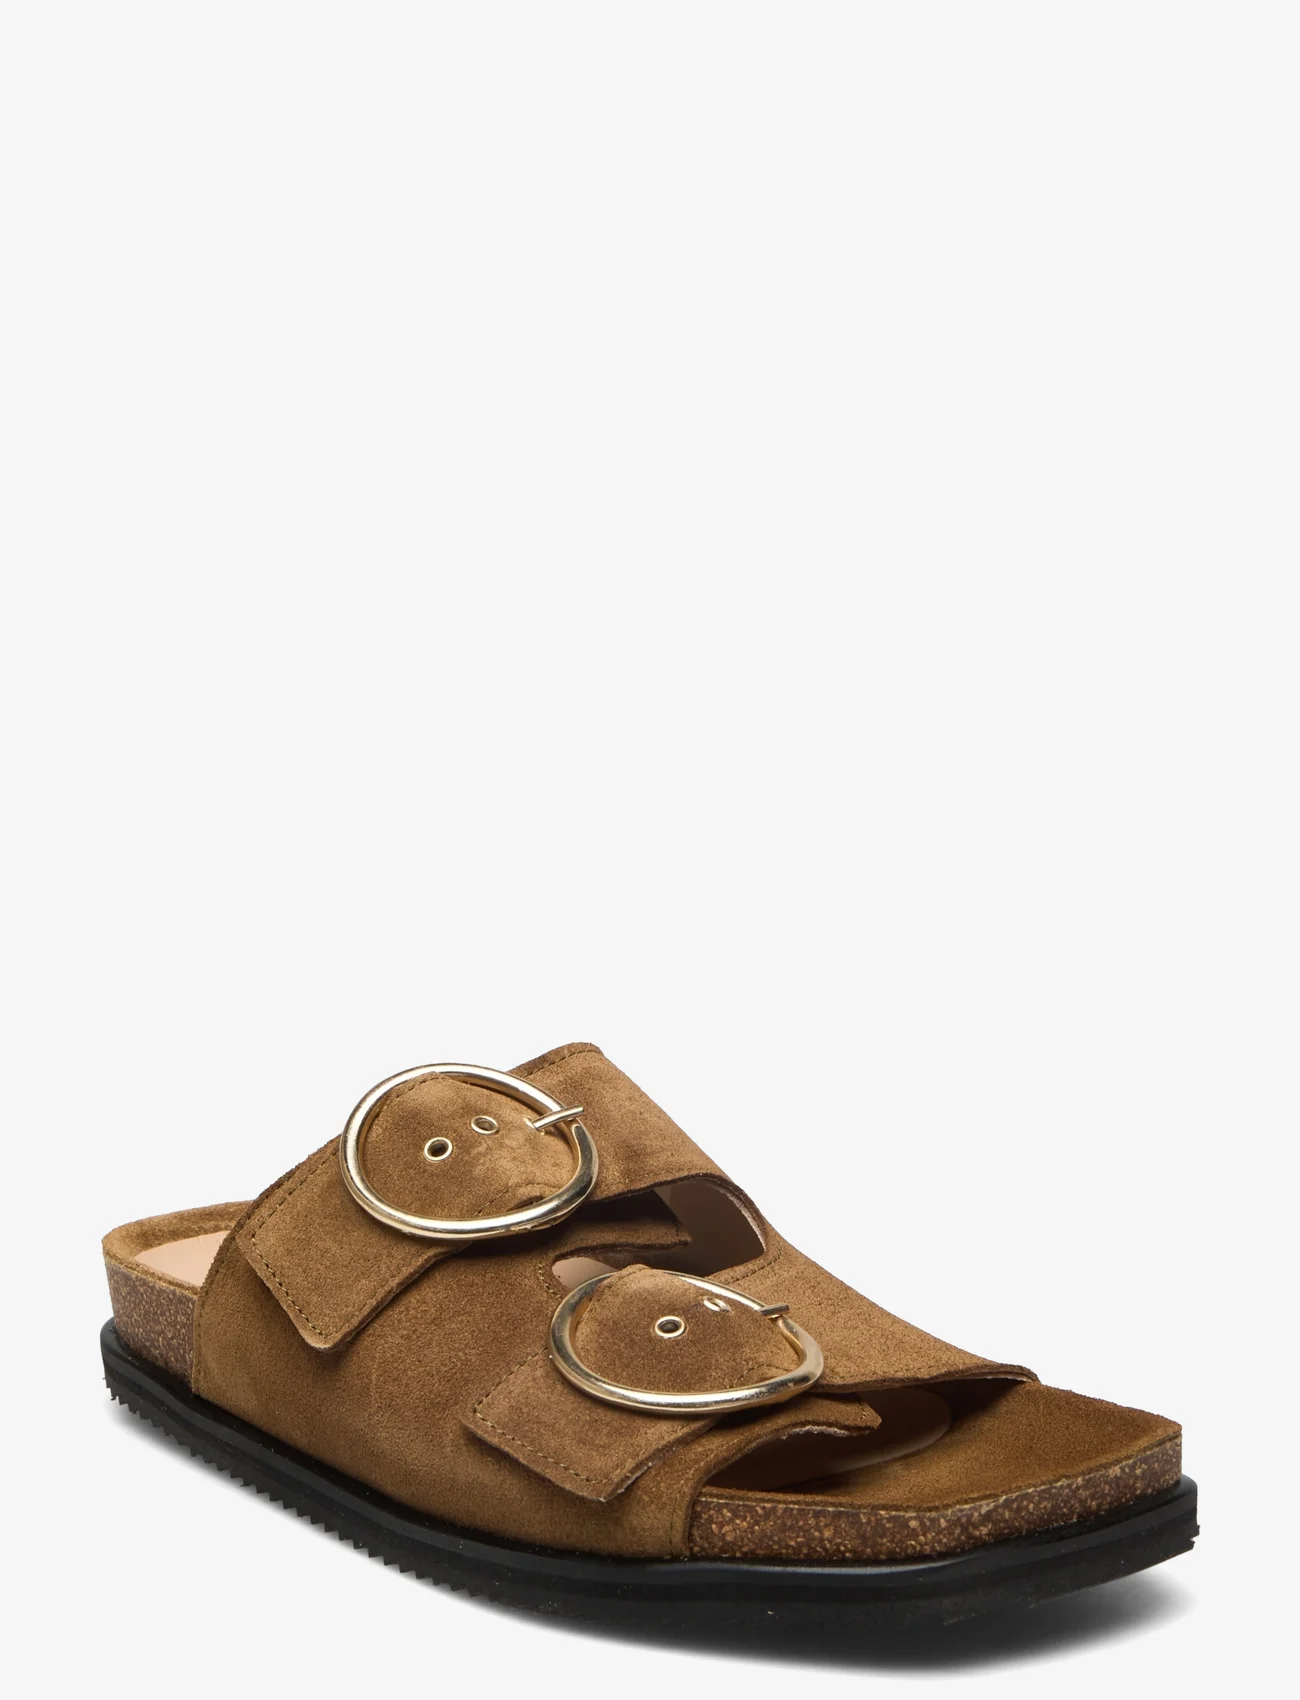 ANGULUS - Sandals - flat - open toe - op - platta sandaler - 2209 mustard - 0